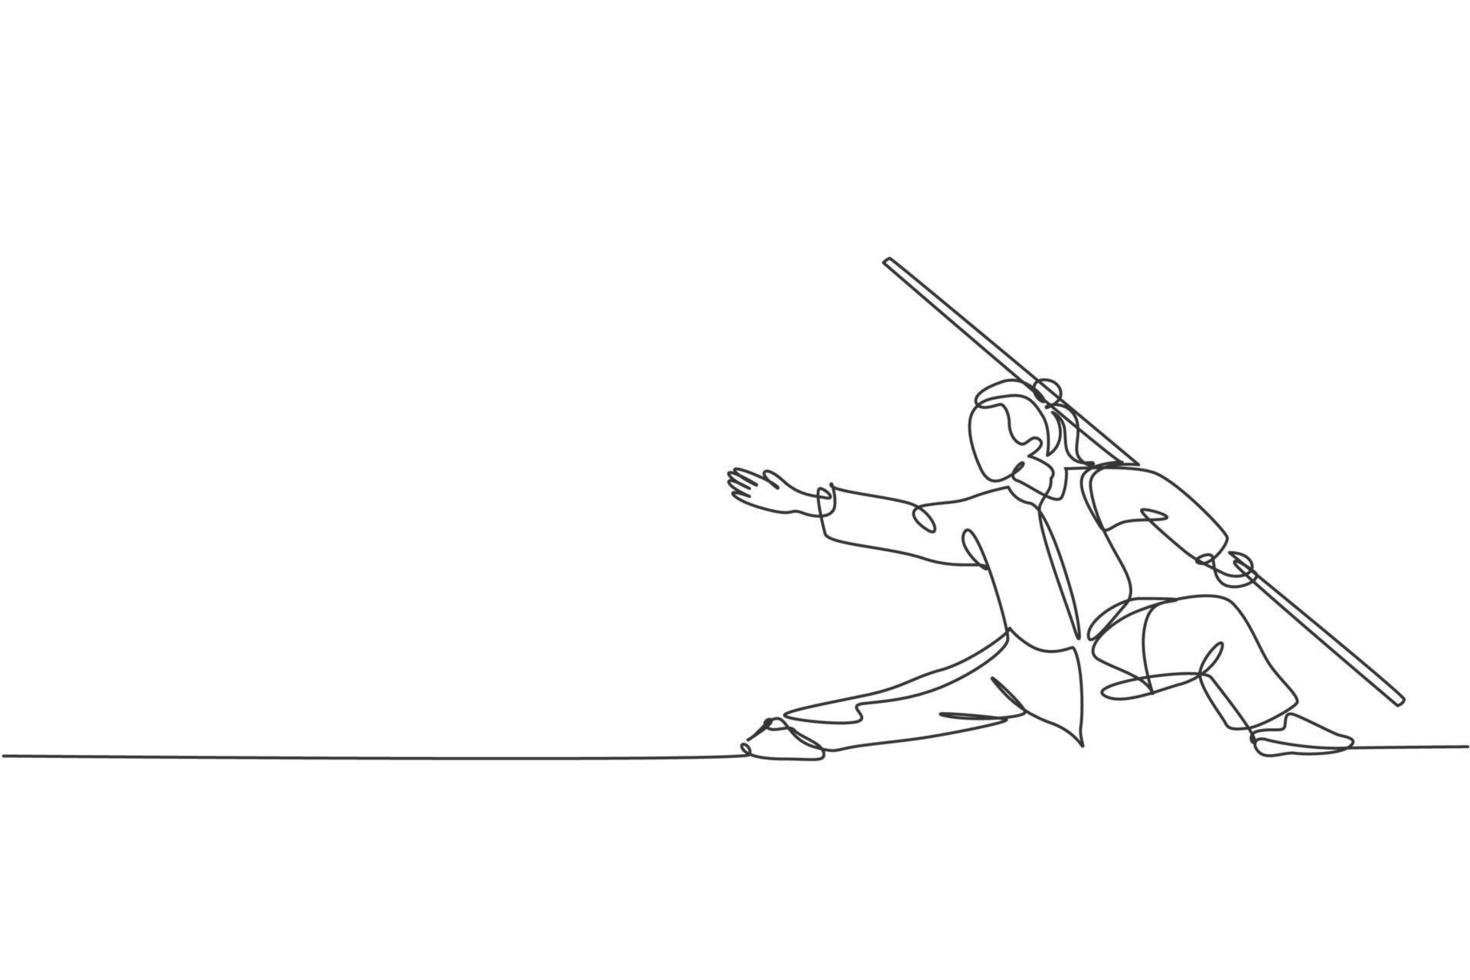 en kontinuerlig linjeteckning av ung wushu-mästarkvinna, kung fu-krigare i kimono med lång personal på träning. kampsport sport tävling koncept. dynamisk enda rad rita design vektorillustration vektor